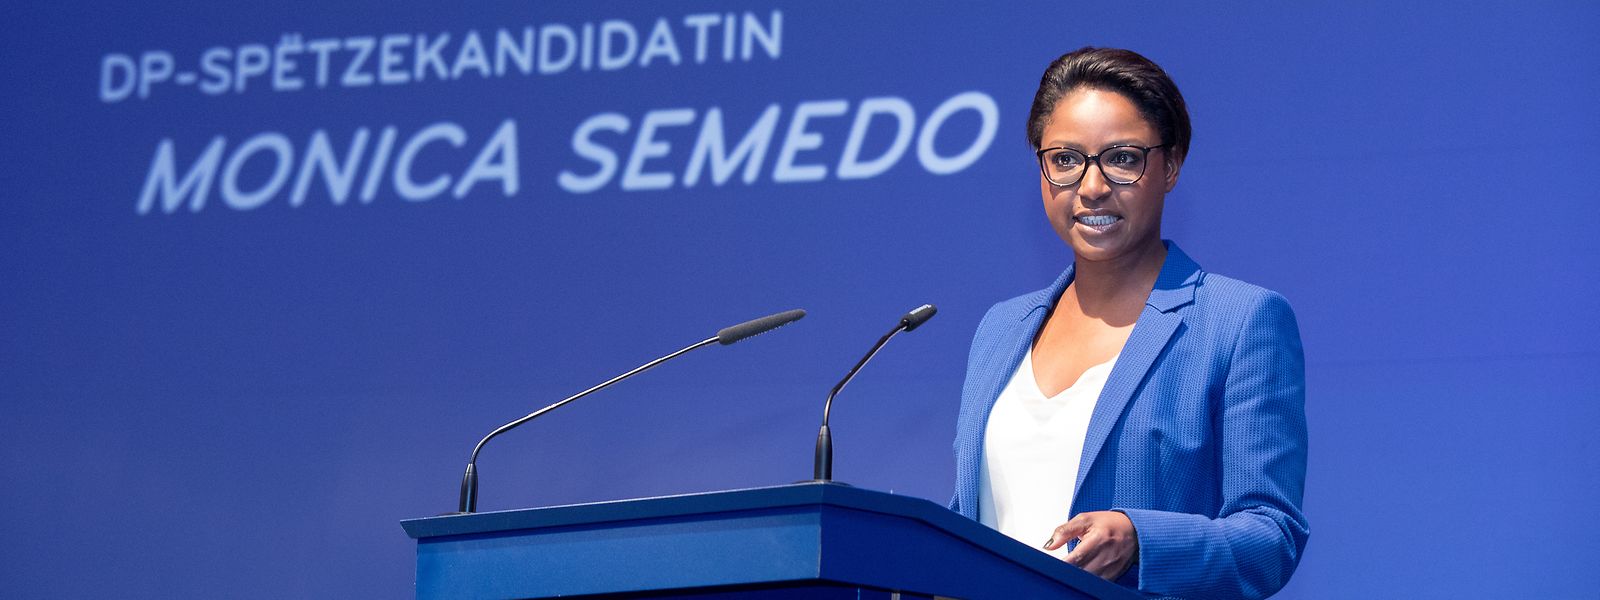 Der Europawahlkampf der DP war auf ihre damalige Hoffnungsträgerin Monica Semedo zugeschnitten. Aus dem Stand konnte die politische Quereinsteigerin ein zweites Mandat für die DP erringen. Nicht einmal zwei Jahre später kam der tiefe Fall. 